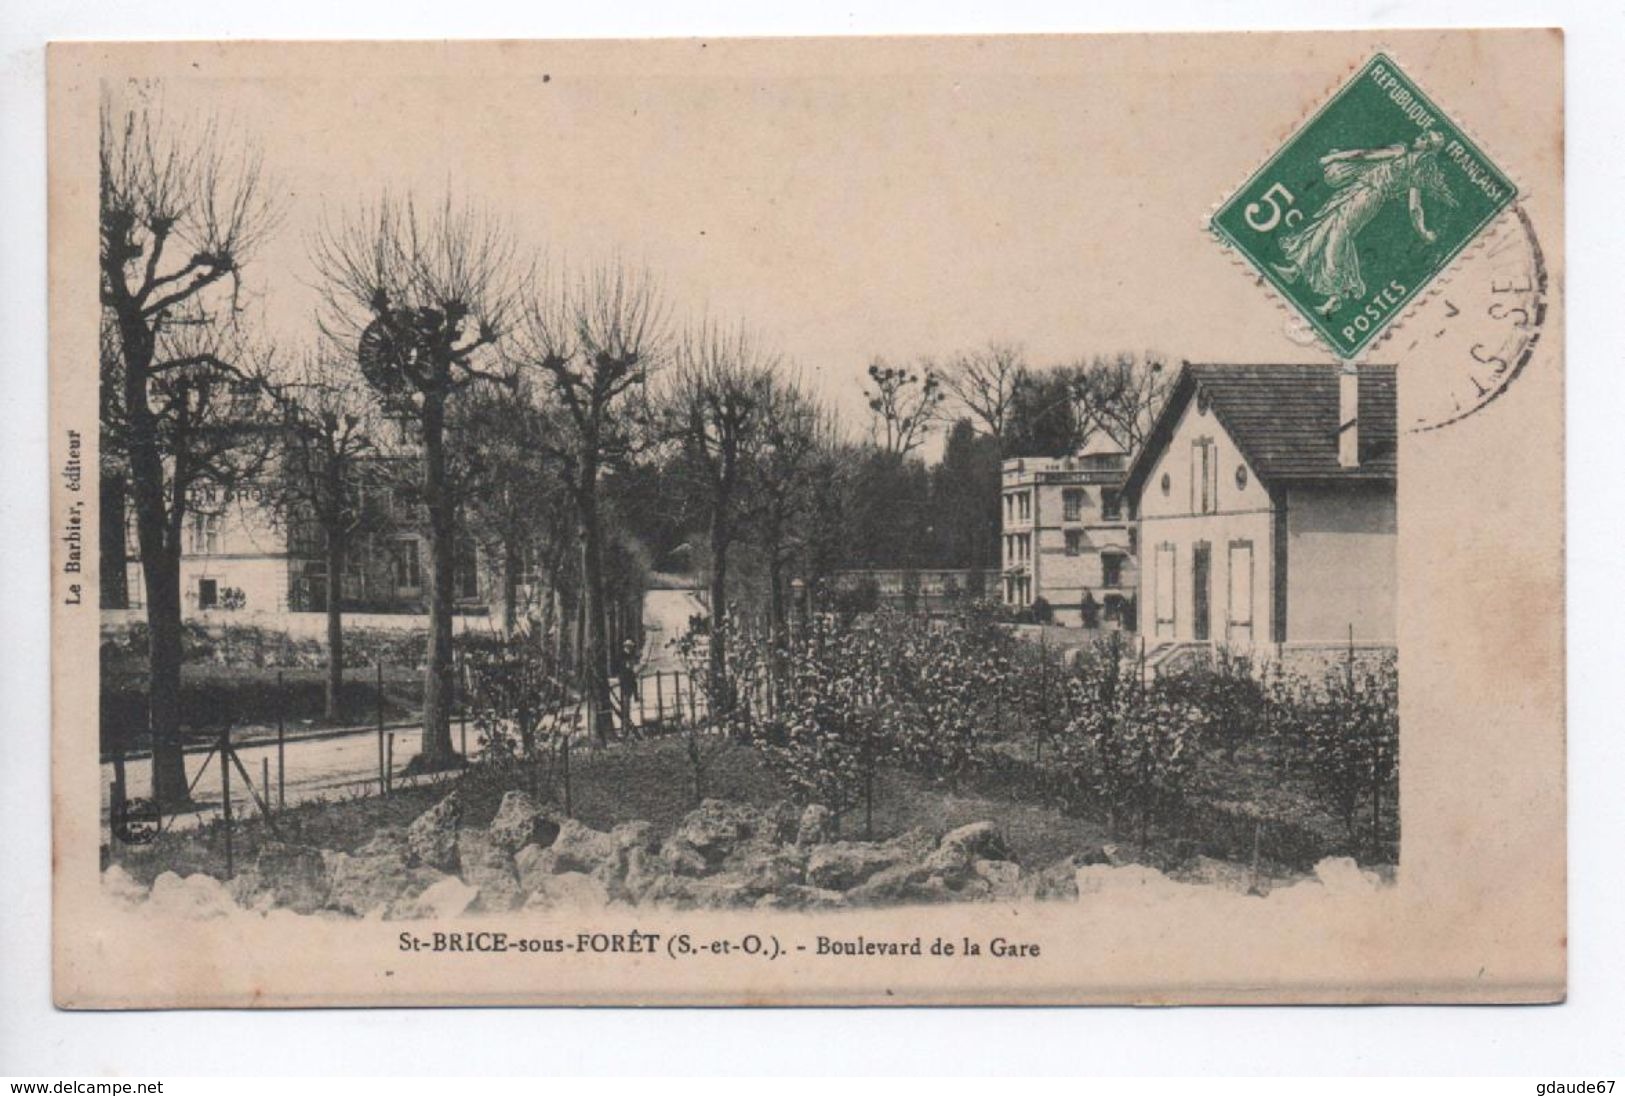 SAINT BRICE SOUS FORET (95) - BOULEVARD DE LA GARE - Saint-Brice-sous-Forêt